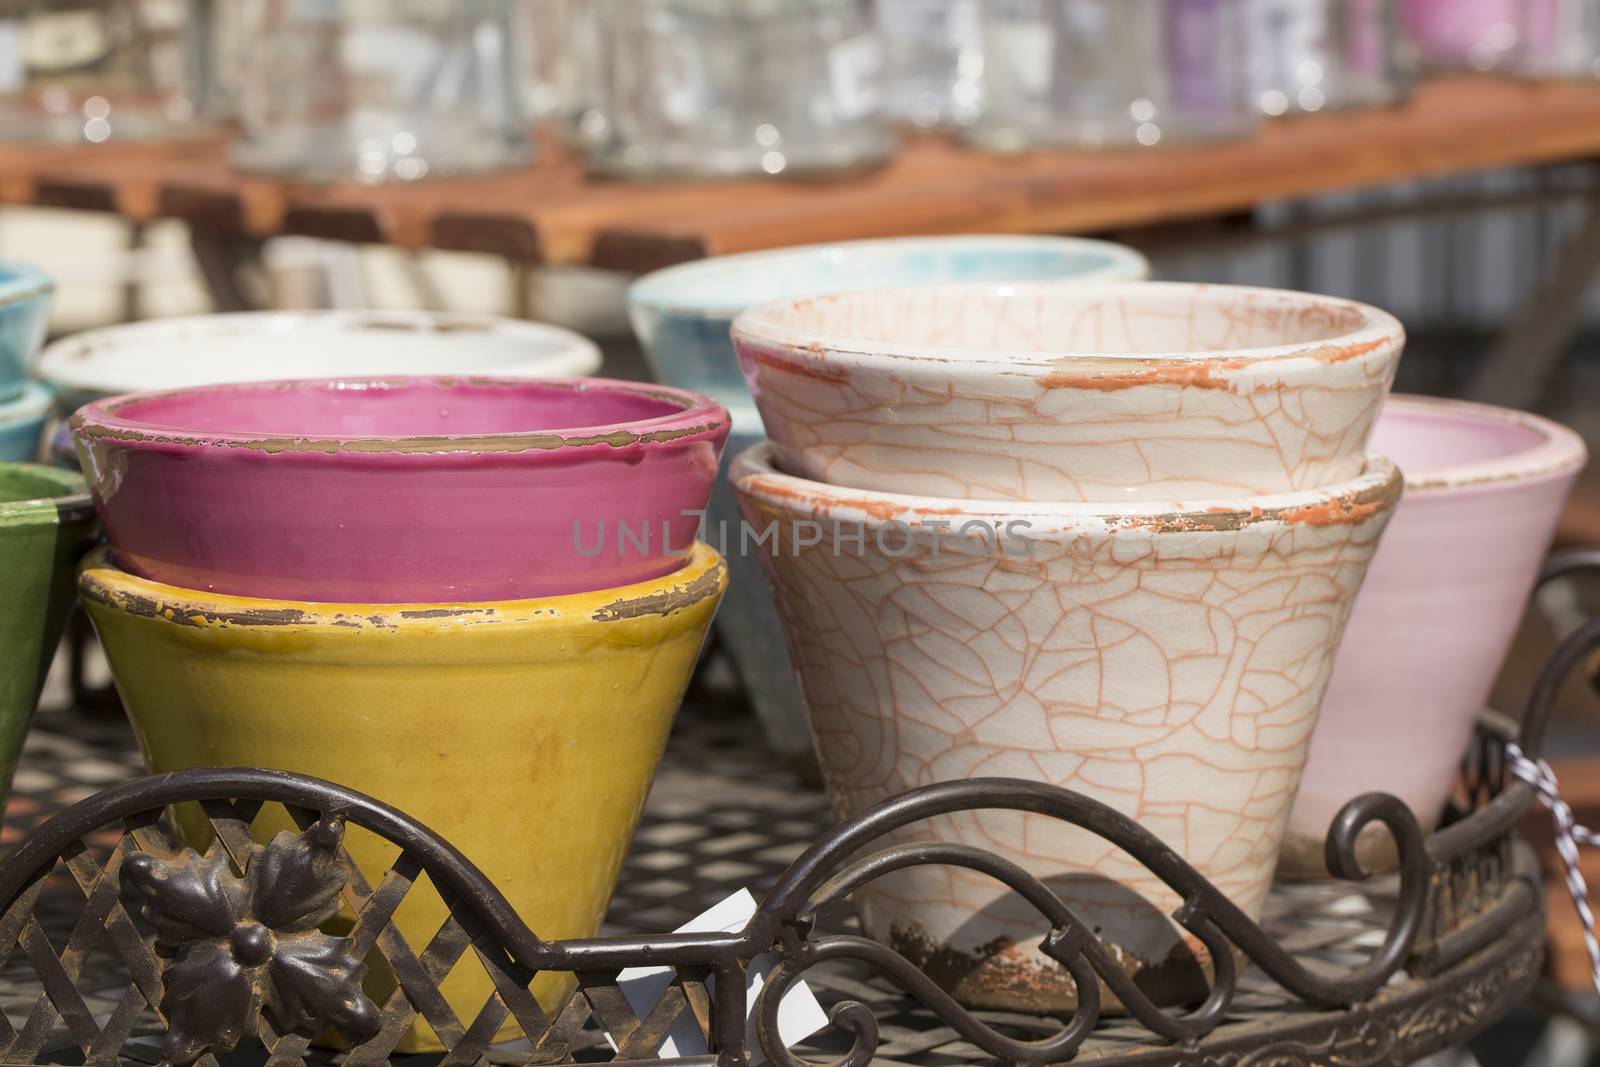 Rustic retro ceramic flower pots in various colors